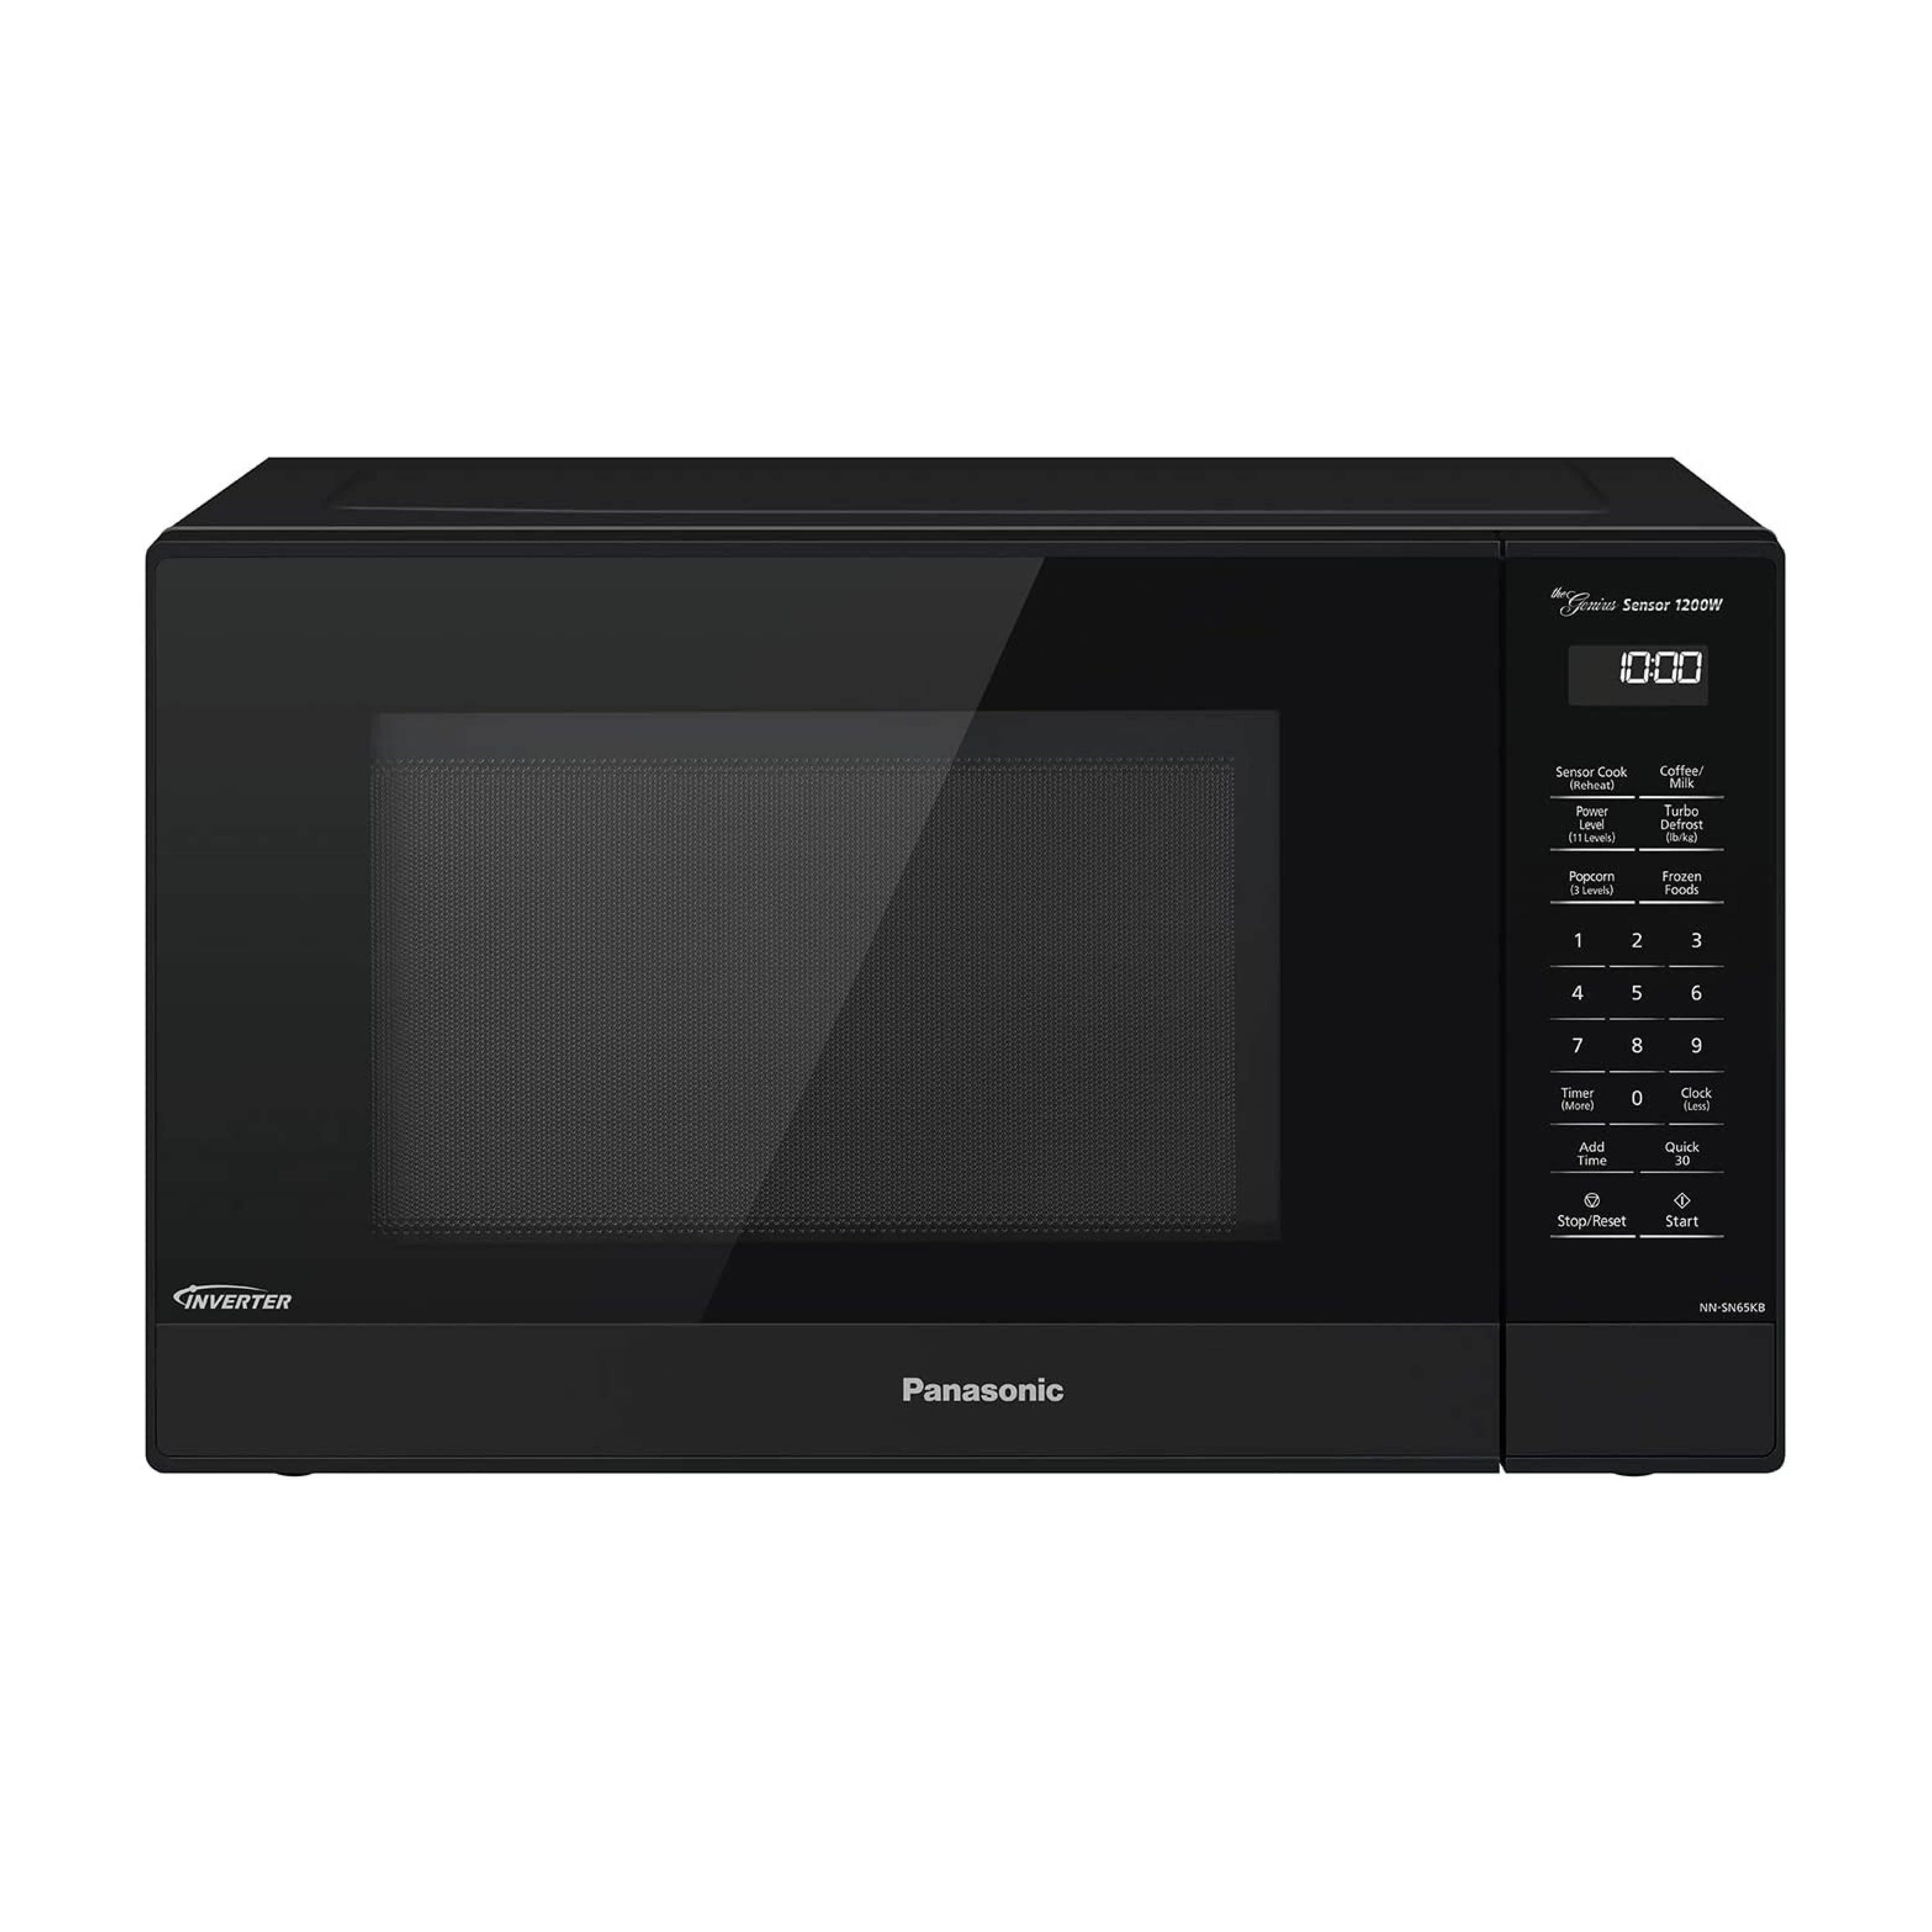 Panasonic NN-SN65KB Microwave Oven